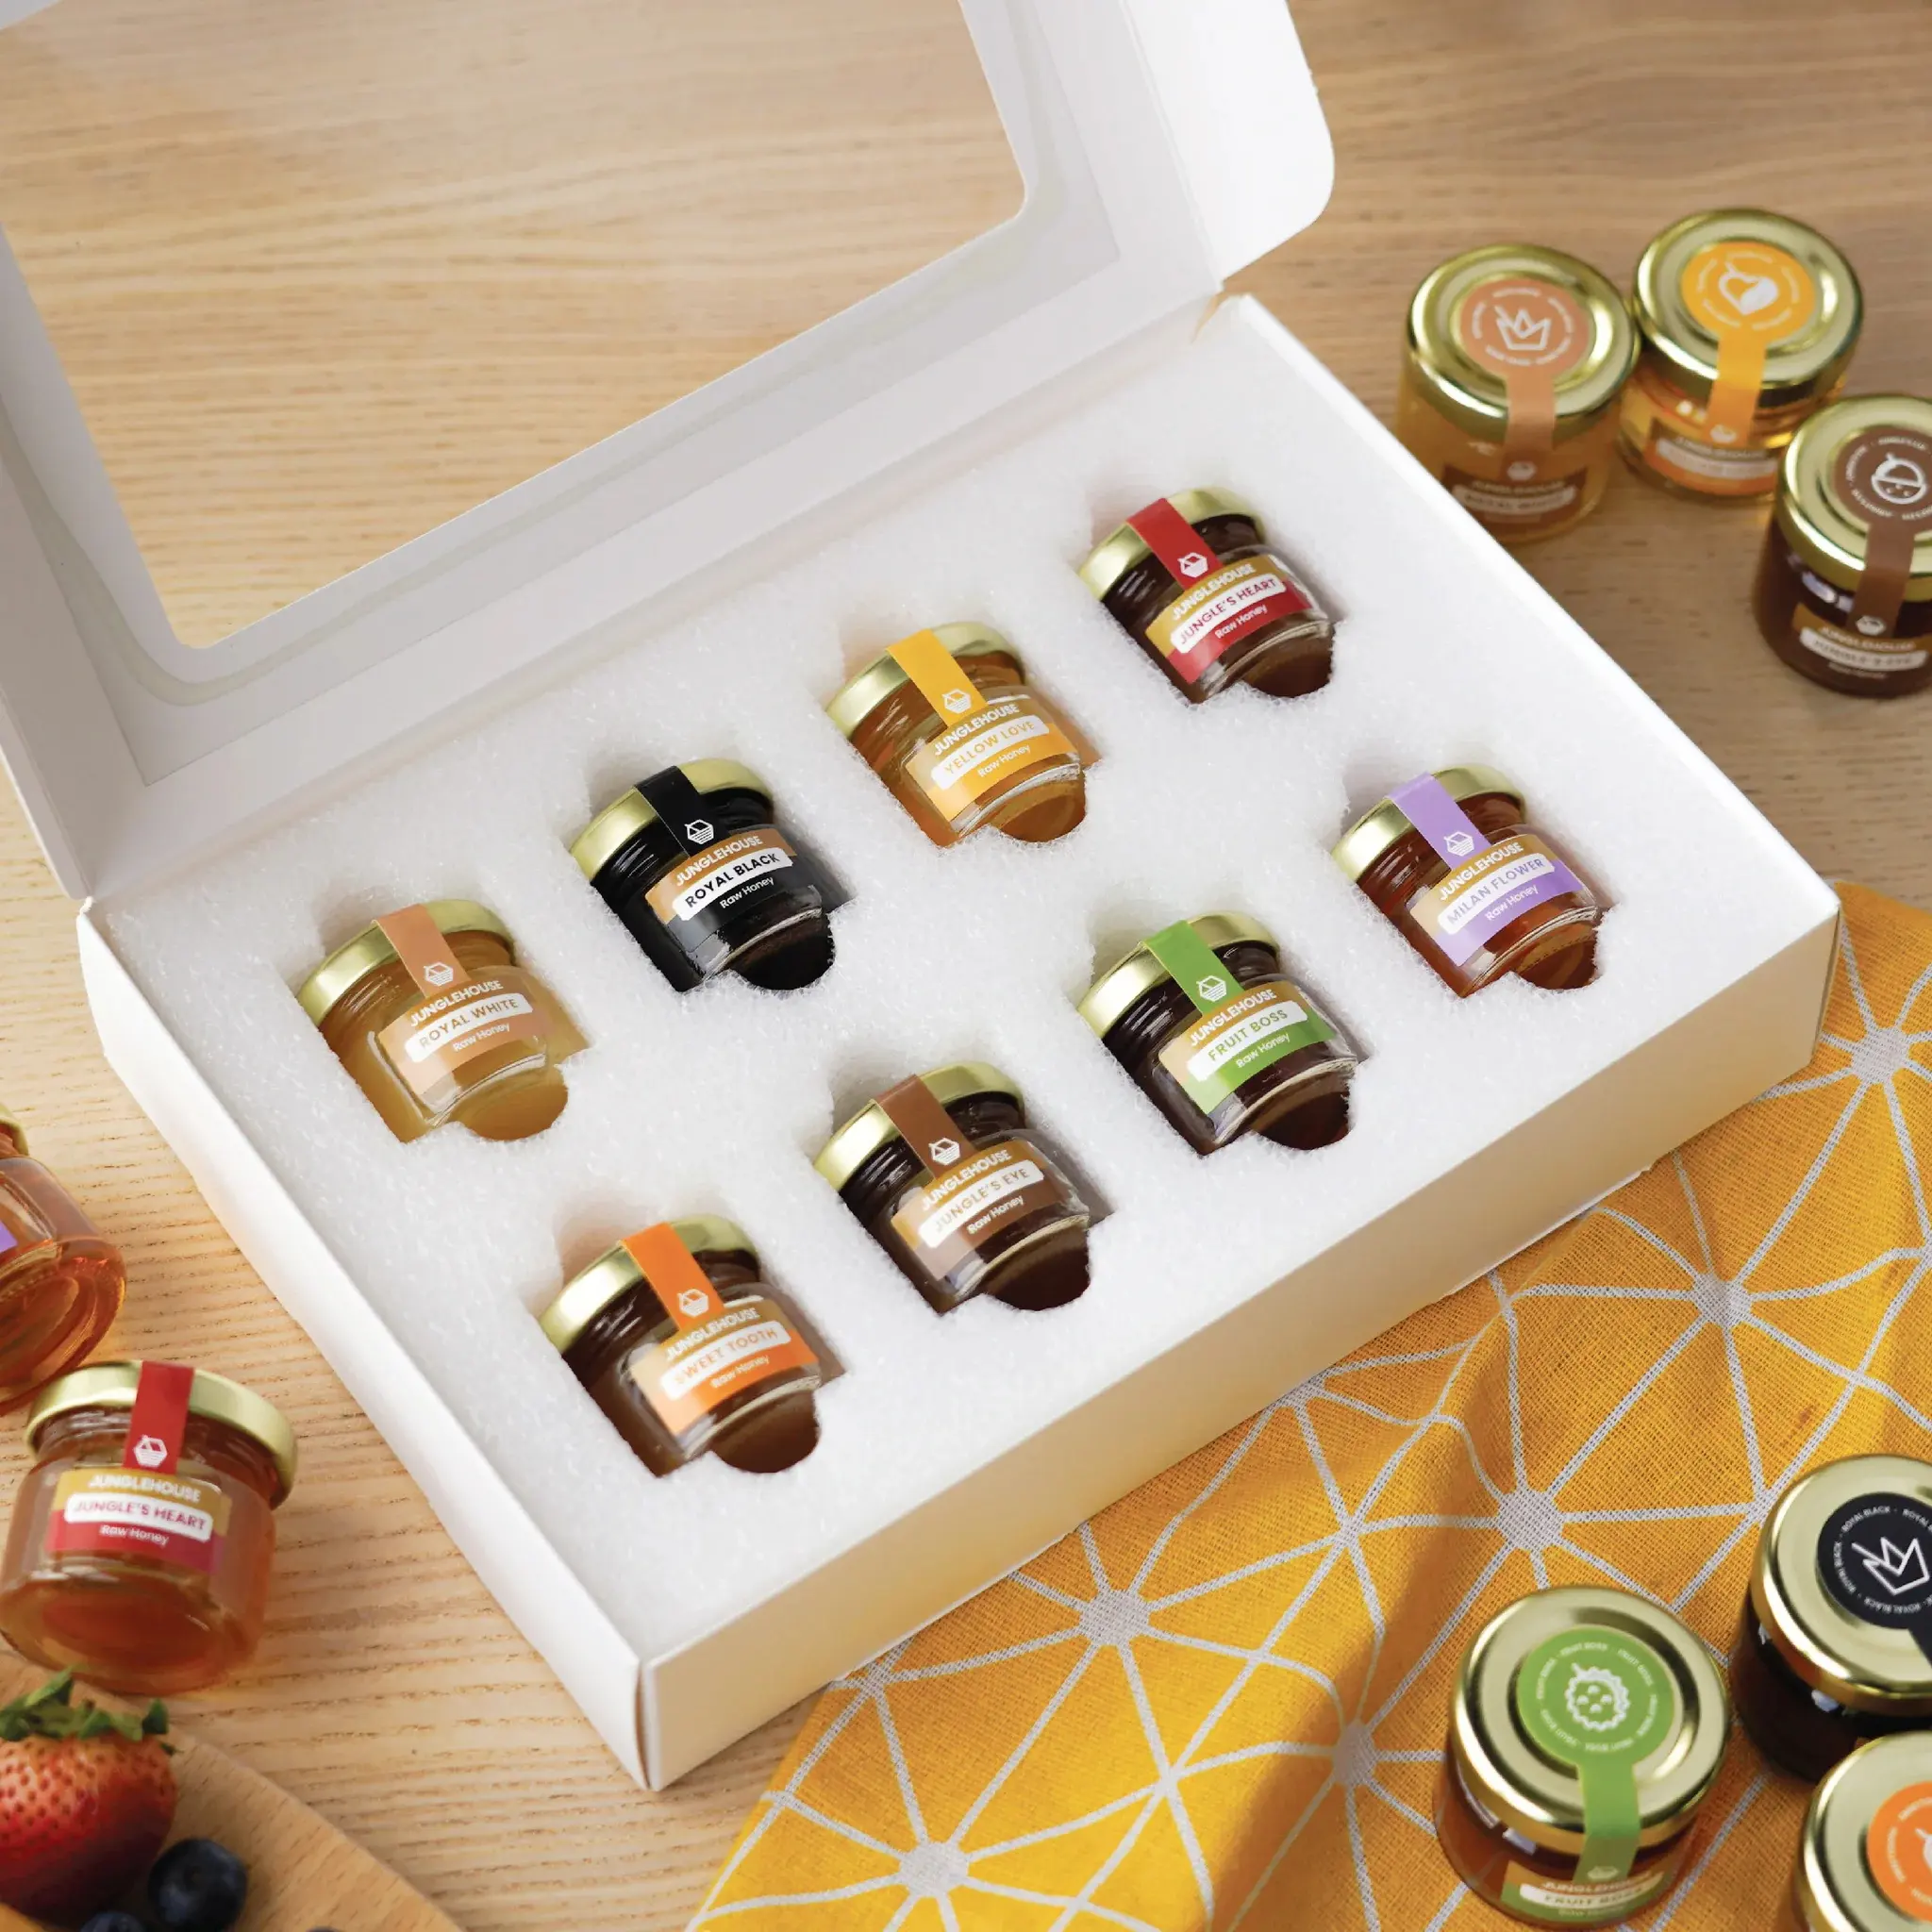 Cajas de mermelada de miel de lujo para embalaje de mermelada de fresa Impresión de pegatinas personalizadas Botella de mermelada Tarro de vidrio vacío Caja de miel de regalo